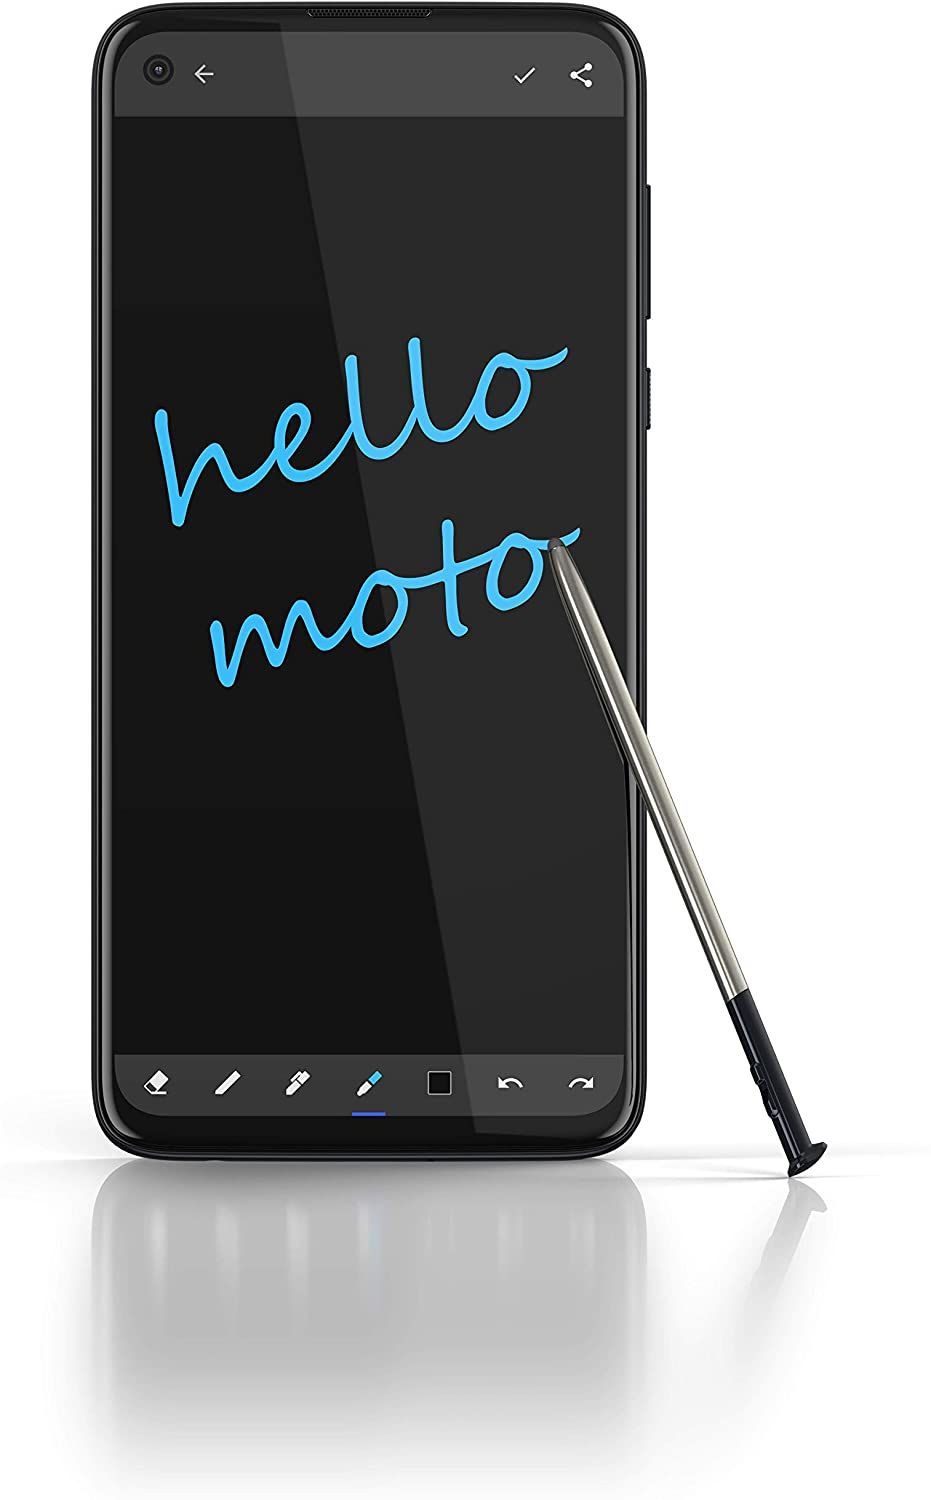 Moto G Stylus stylus demonstration